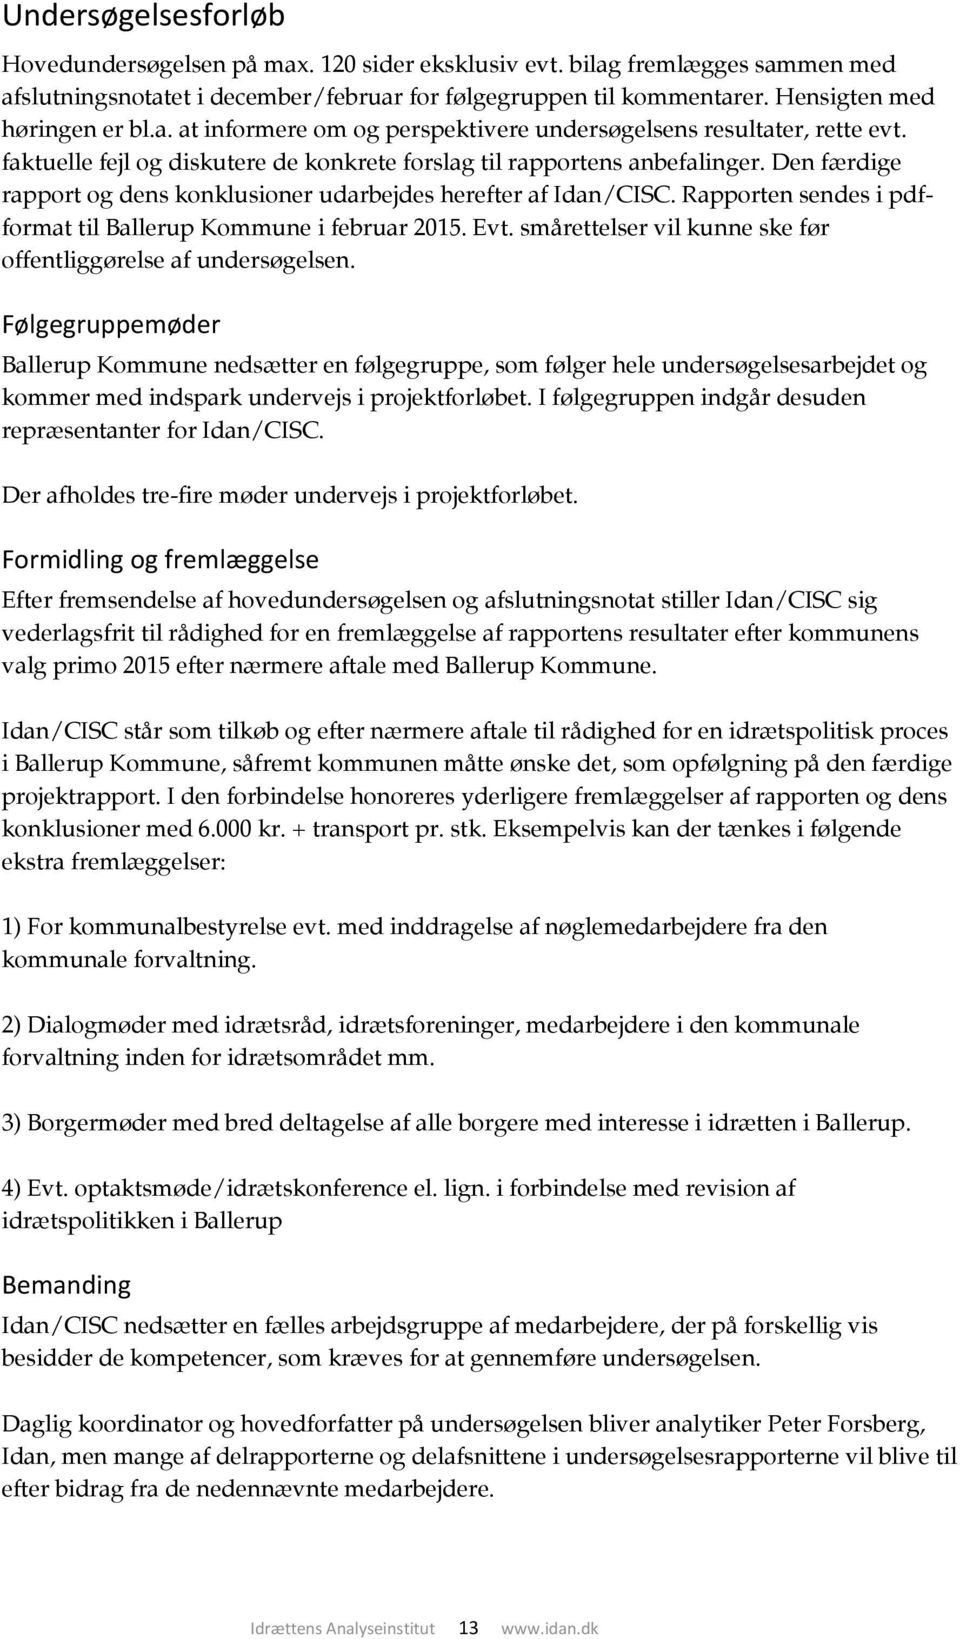 Den færdige rapport og dens konklusioner udarbejdes herefter af Idan/CISC. Rapporten sendes i pdfformat til Ballerup Kommune i februar 2015. Evt.